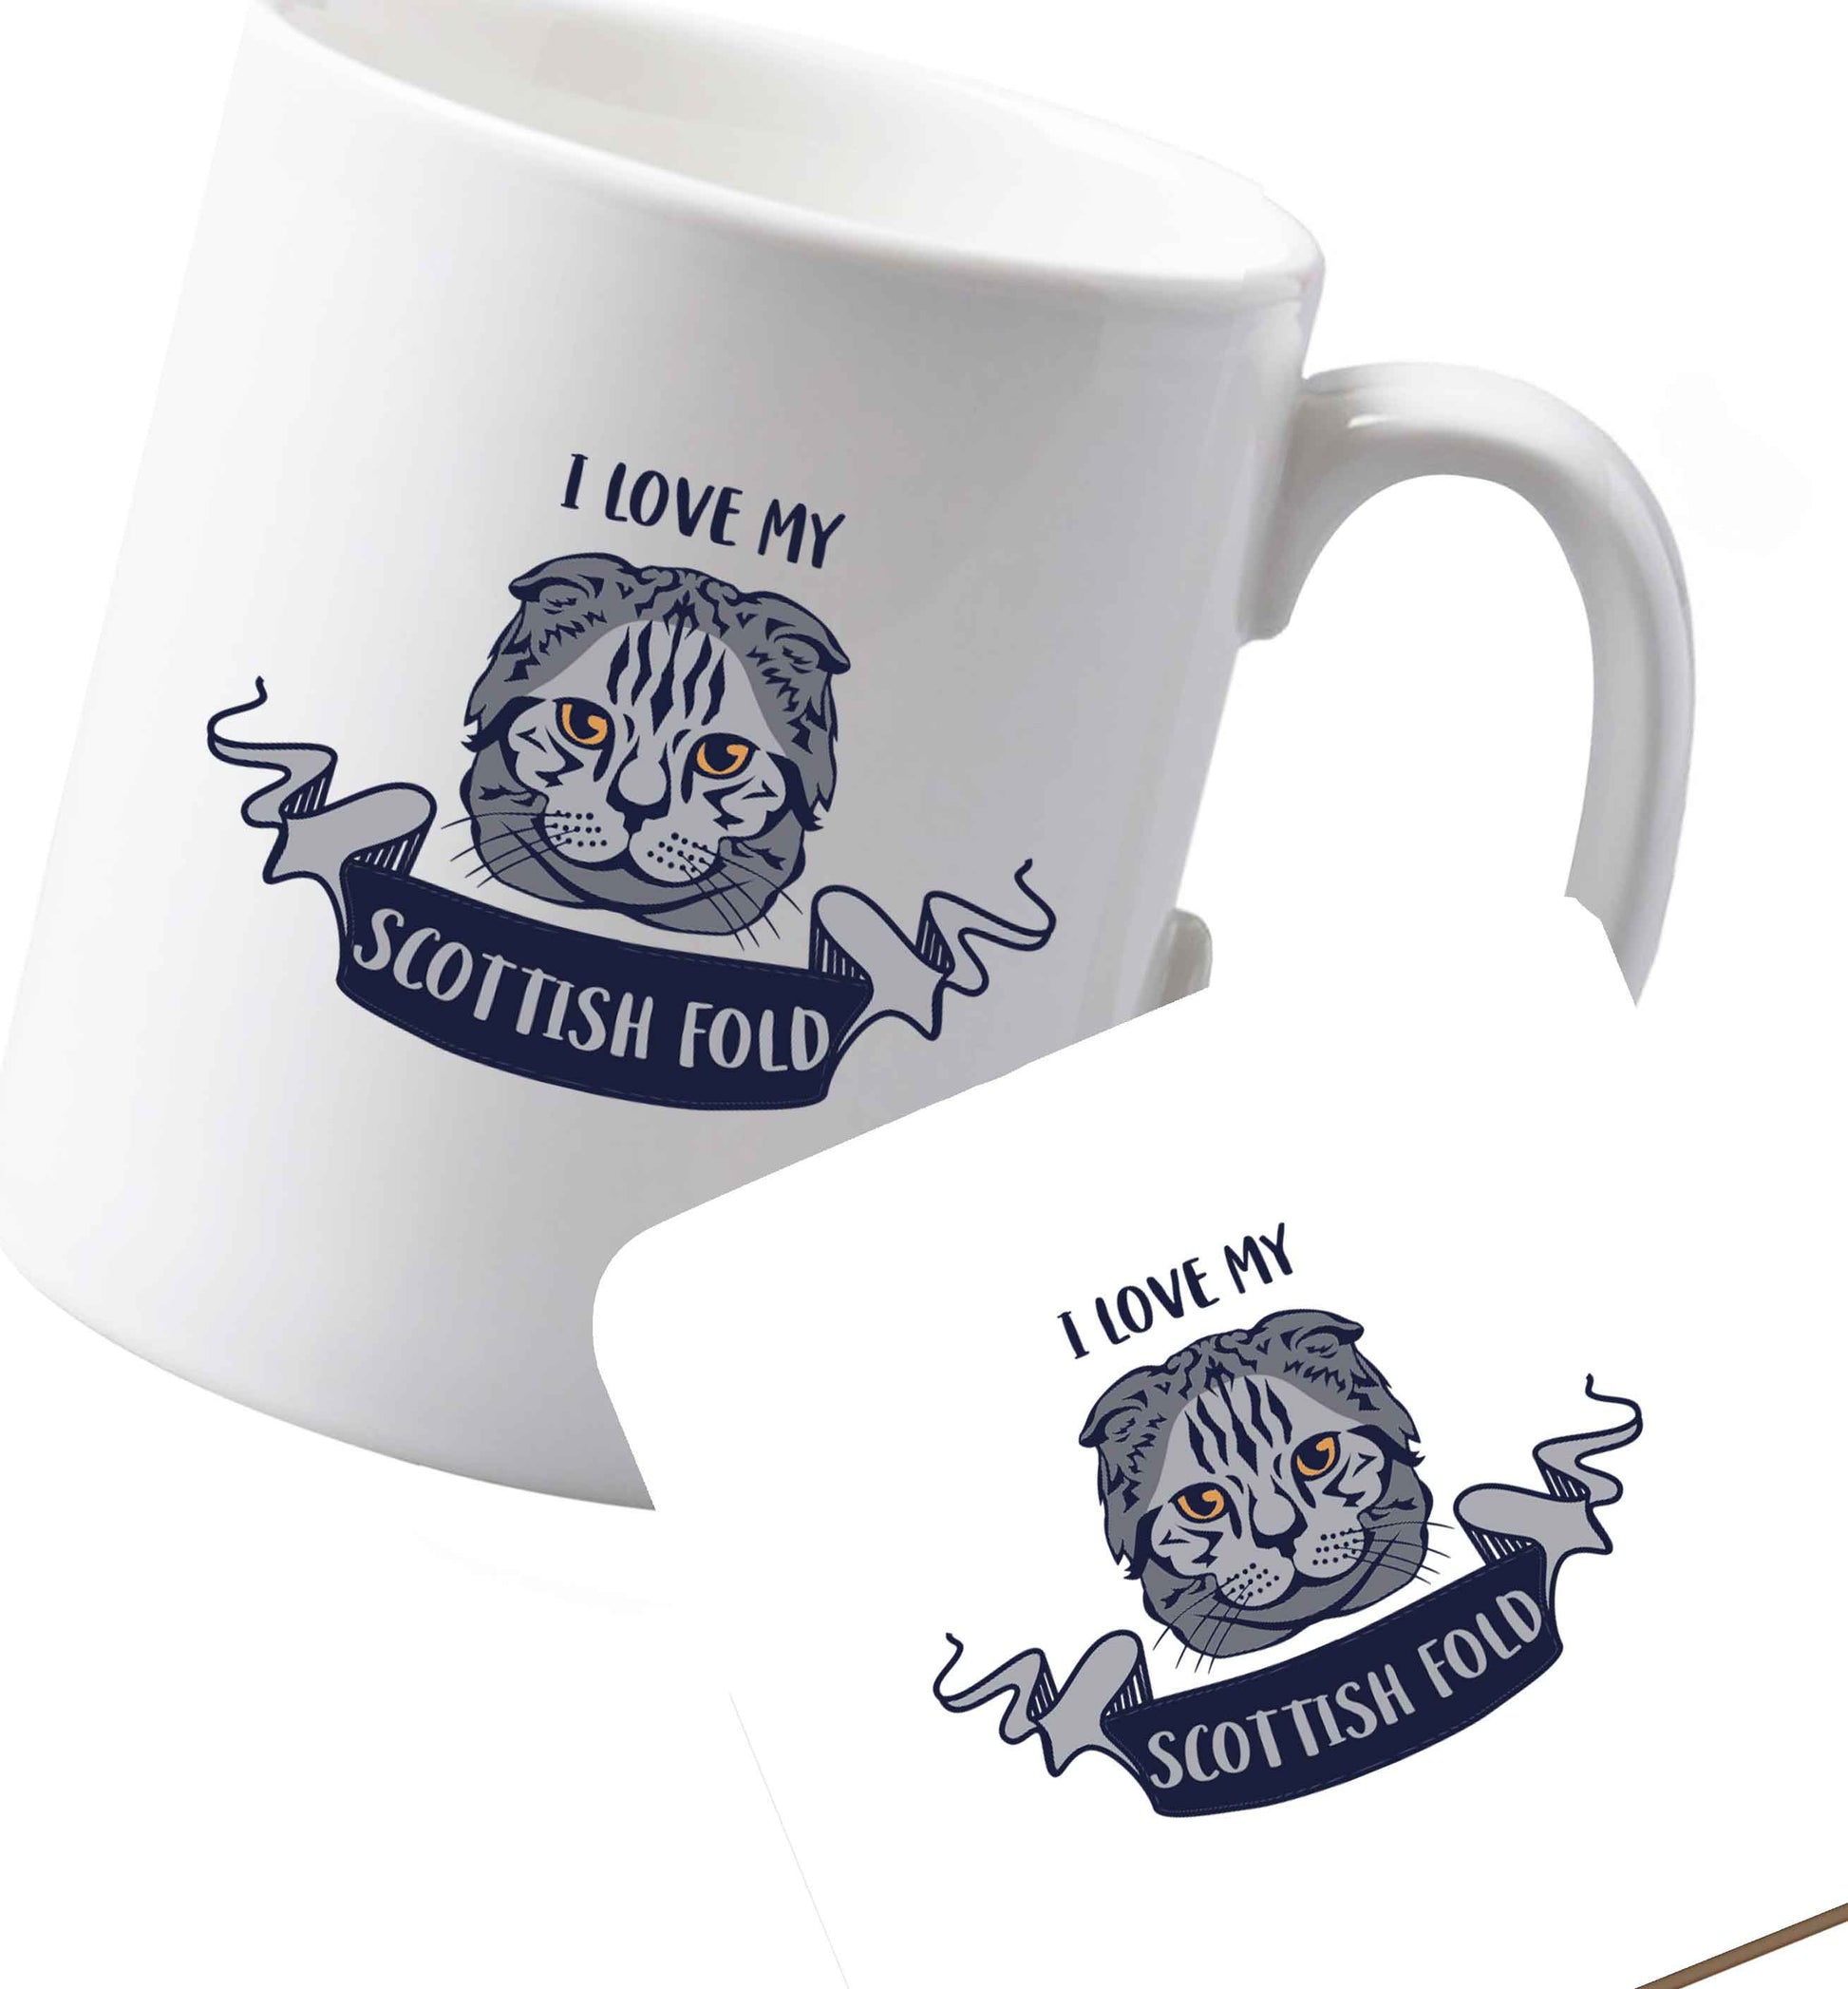 10 oz Ceramic mug and coaster I love my scottish fold cat both sides